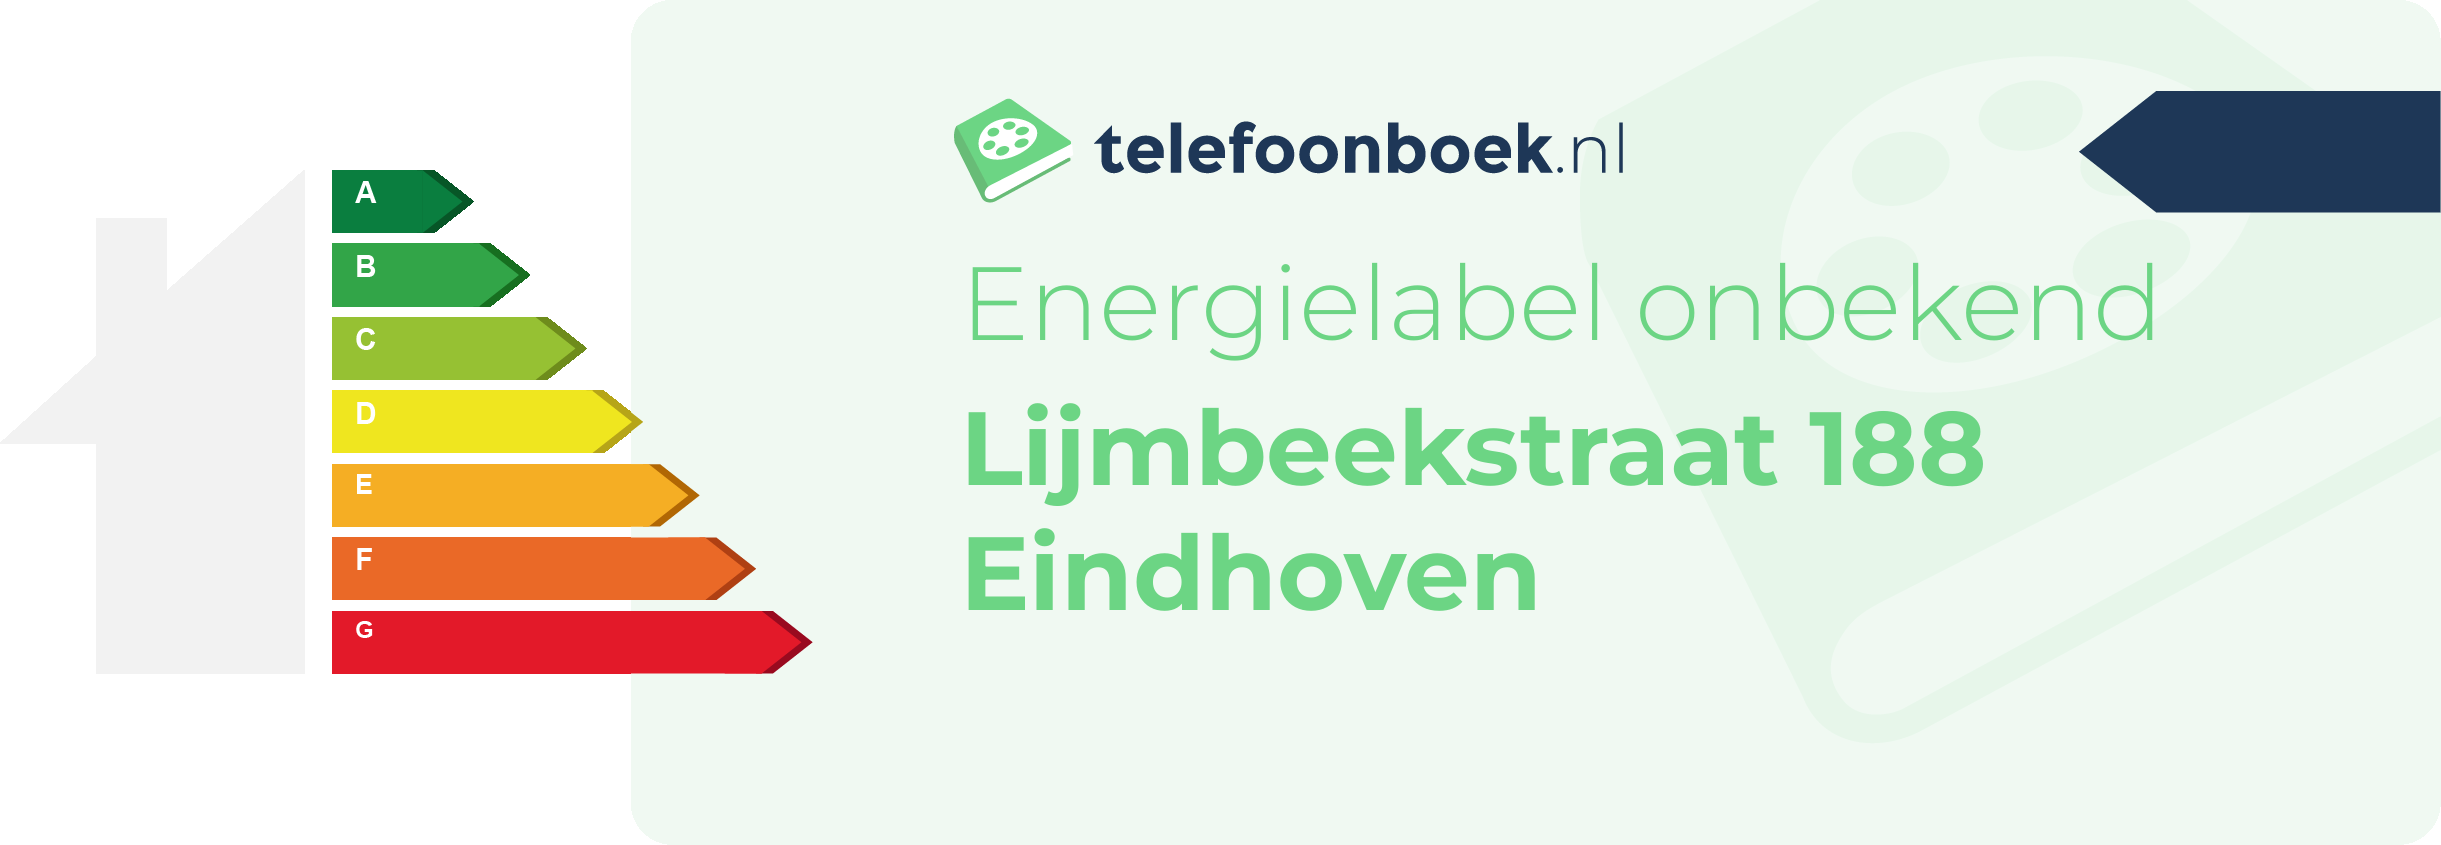 Energielabel Lijmbeekstraat 188 Eindhoven